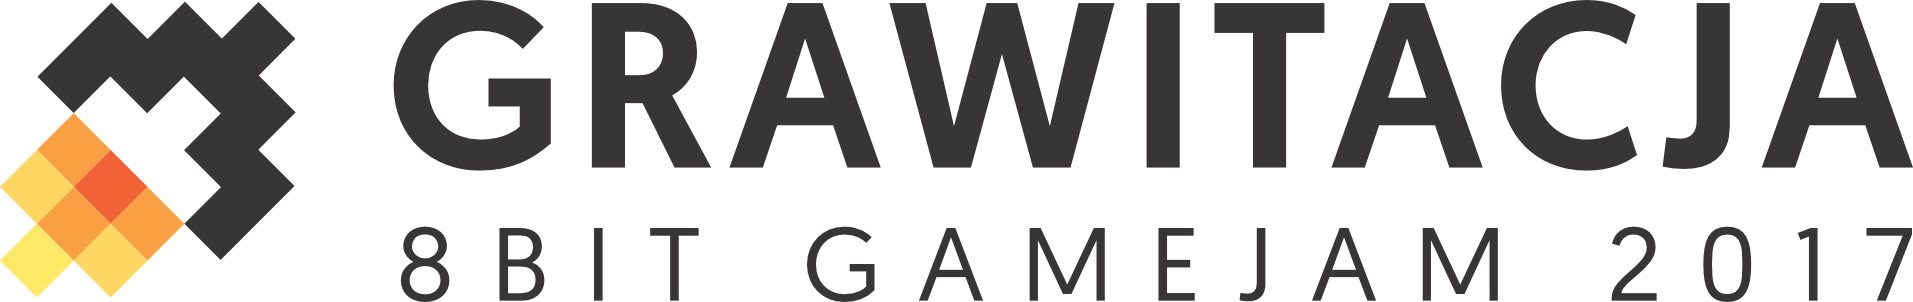 GRAWITACJA 8bit gamejam - logo